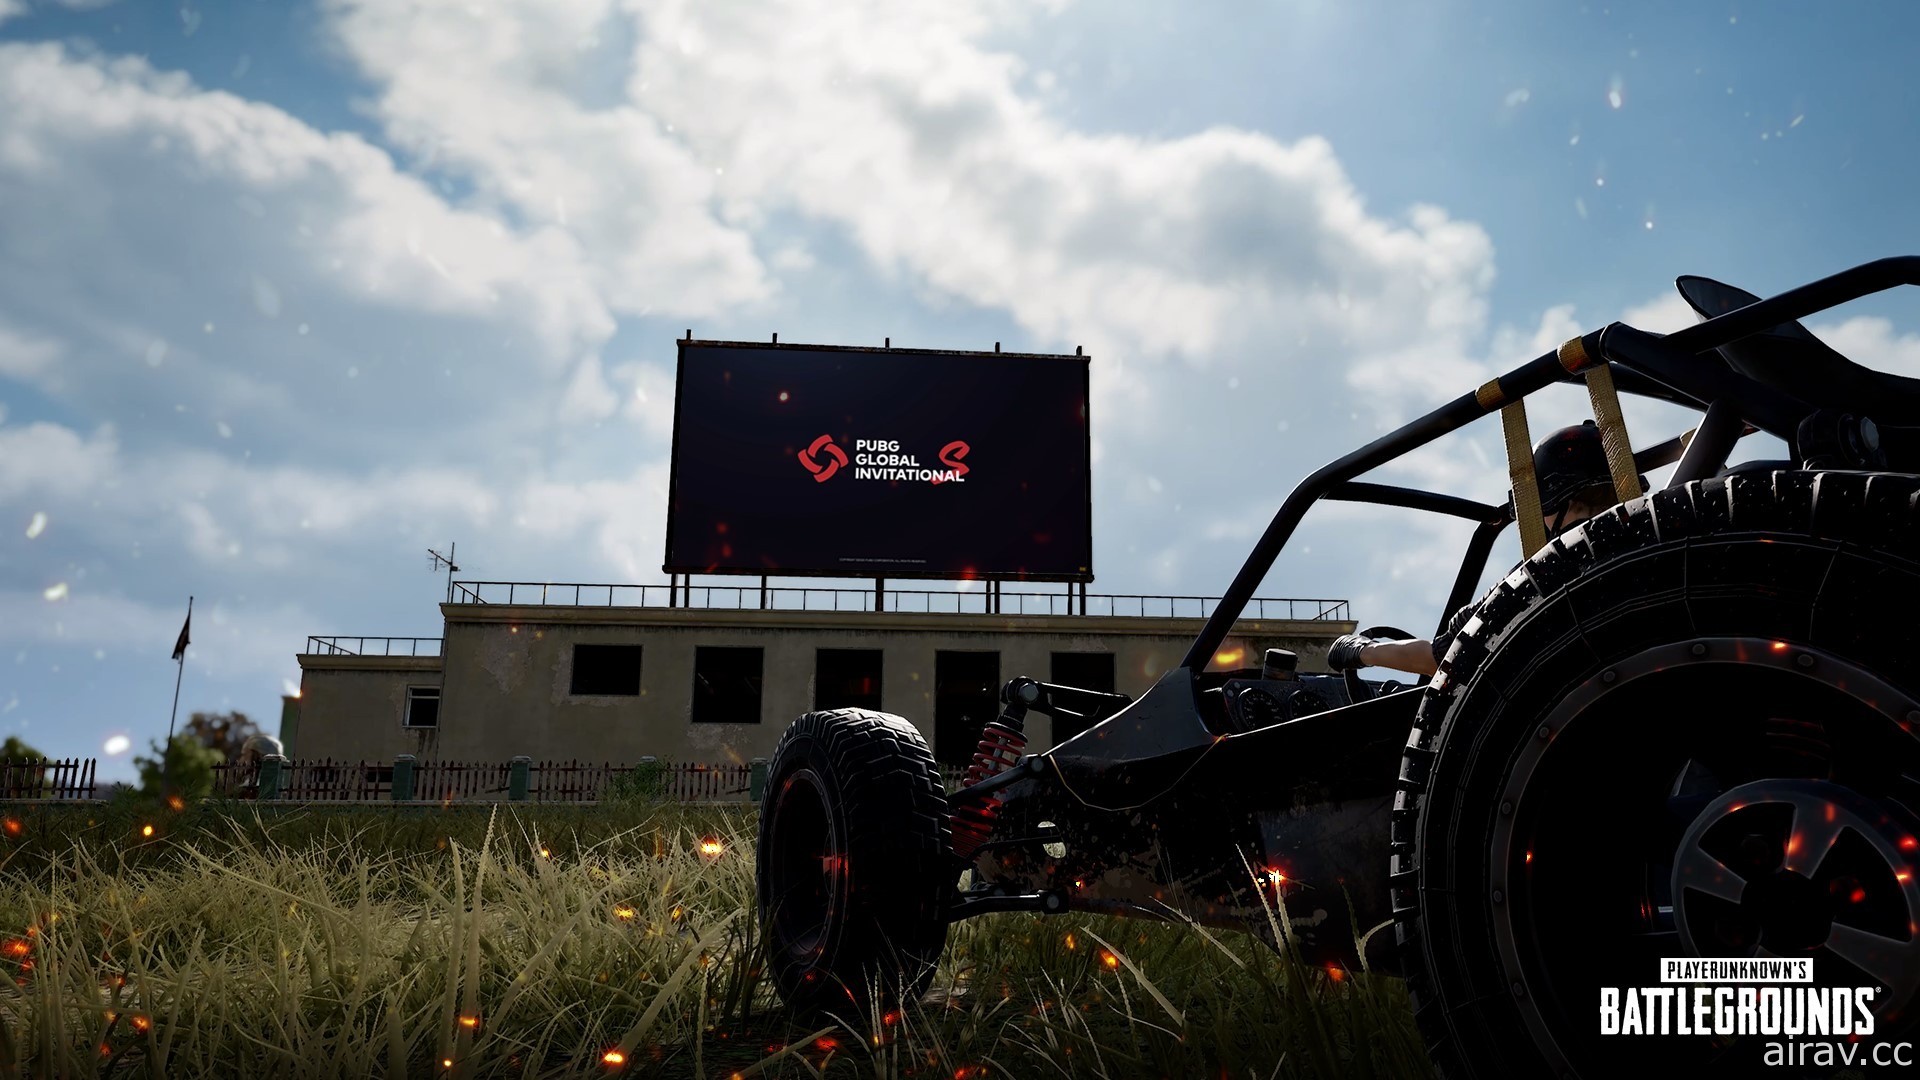 《绝地求生》10.2 更新加入越野摩托车空中特技 于游戏内地图建置直播电视墙